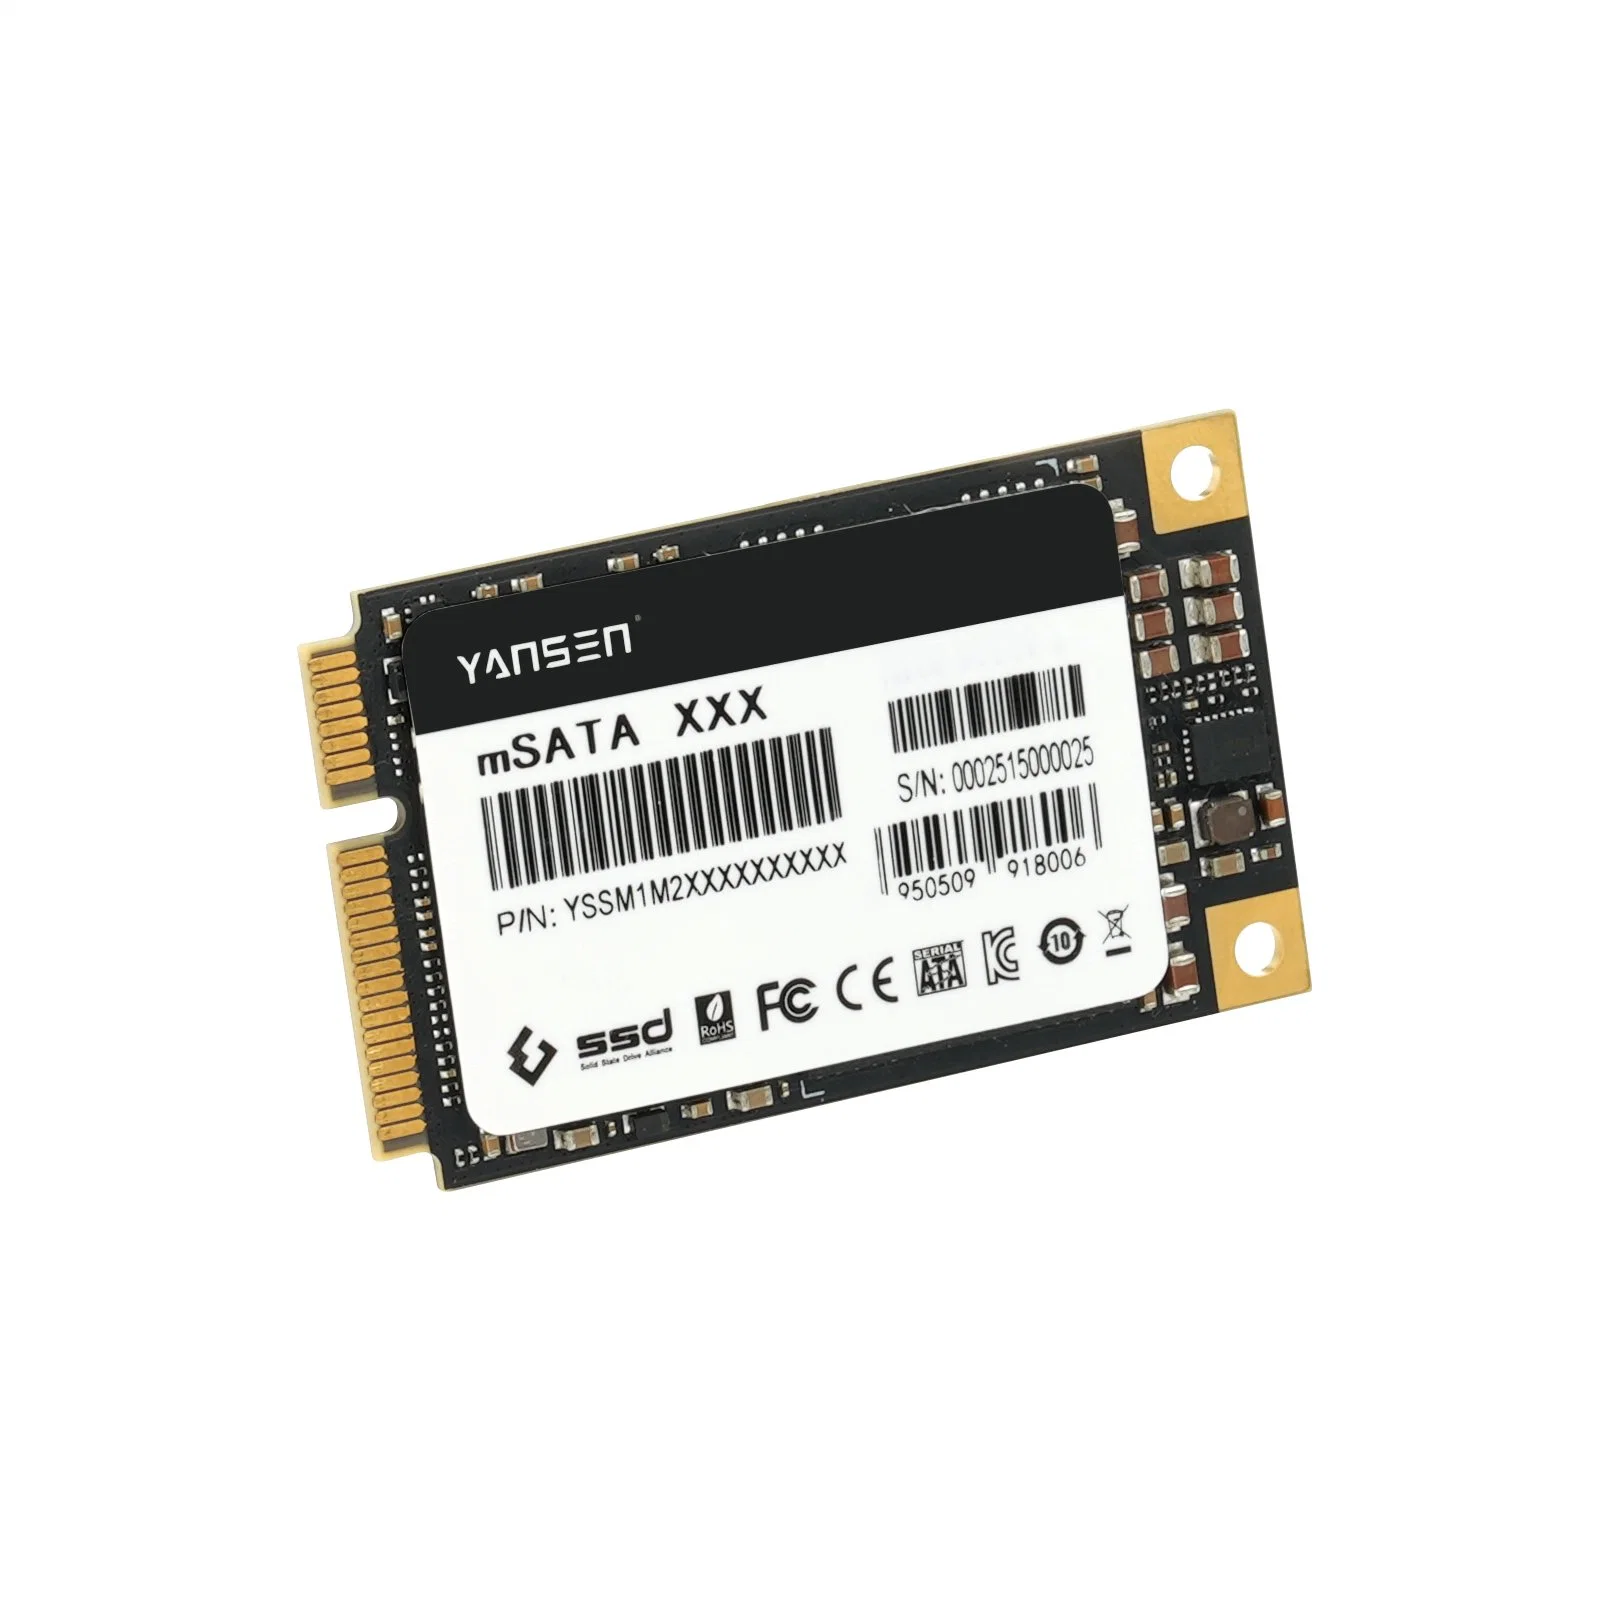 قرص الحالة الصلبة Yansen Msata SSD MLC بسعة 1 تيرابايت لمحرك الأقراص ذات الحالة الصلبة مع DRAM للعملاء من ذوي النحافة وآلات البيع